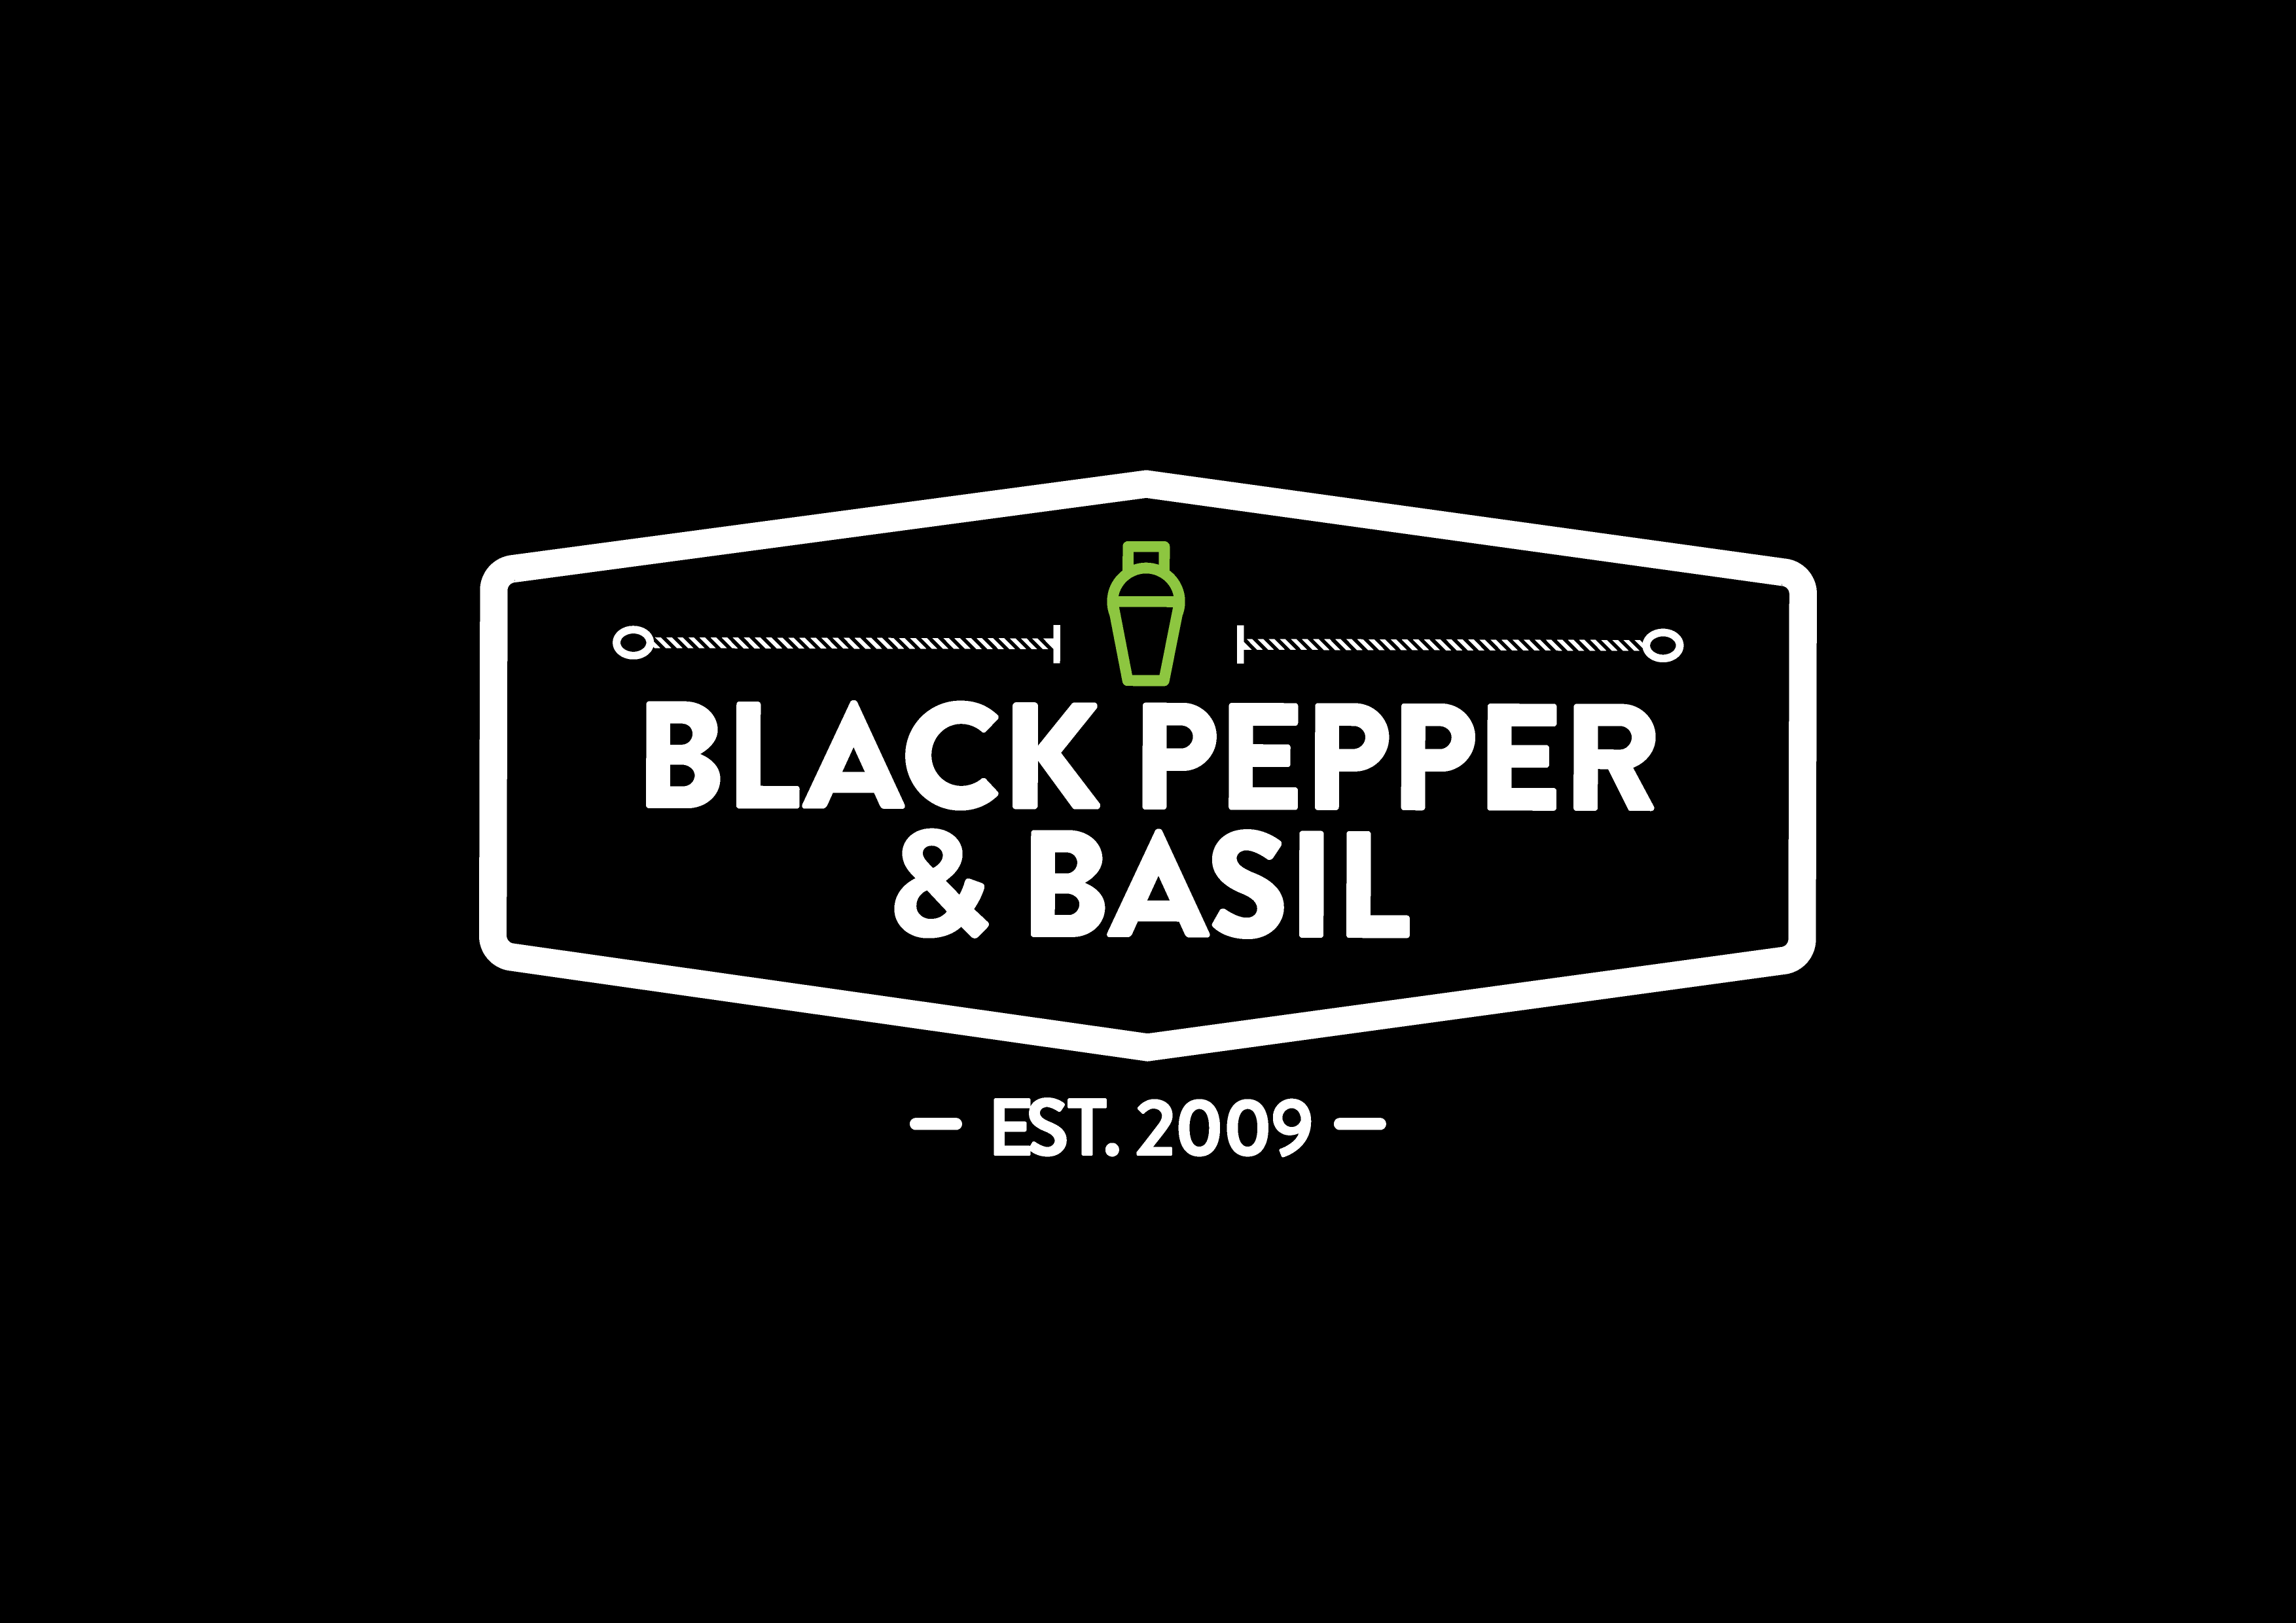 Black Pepper & Basil